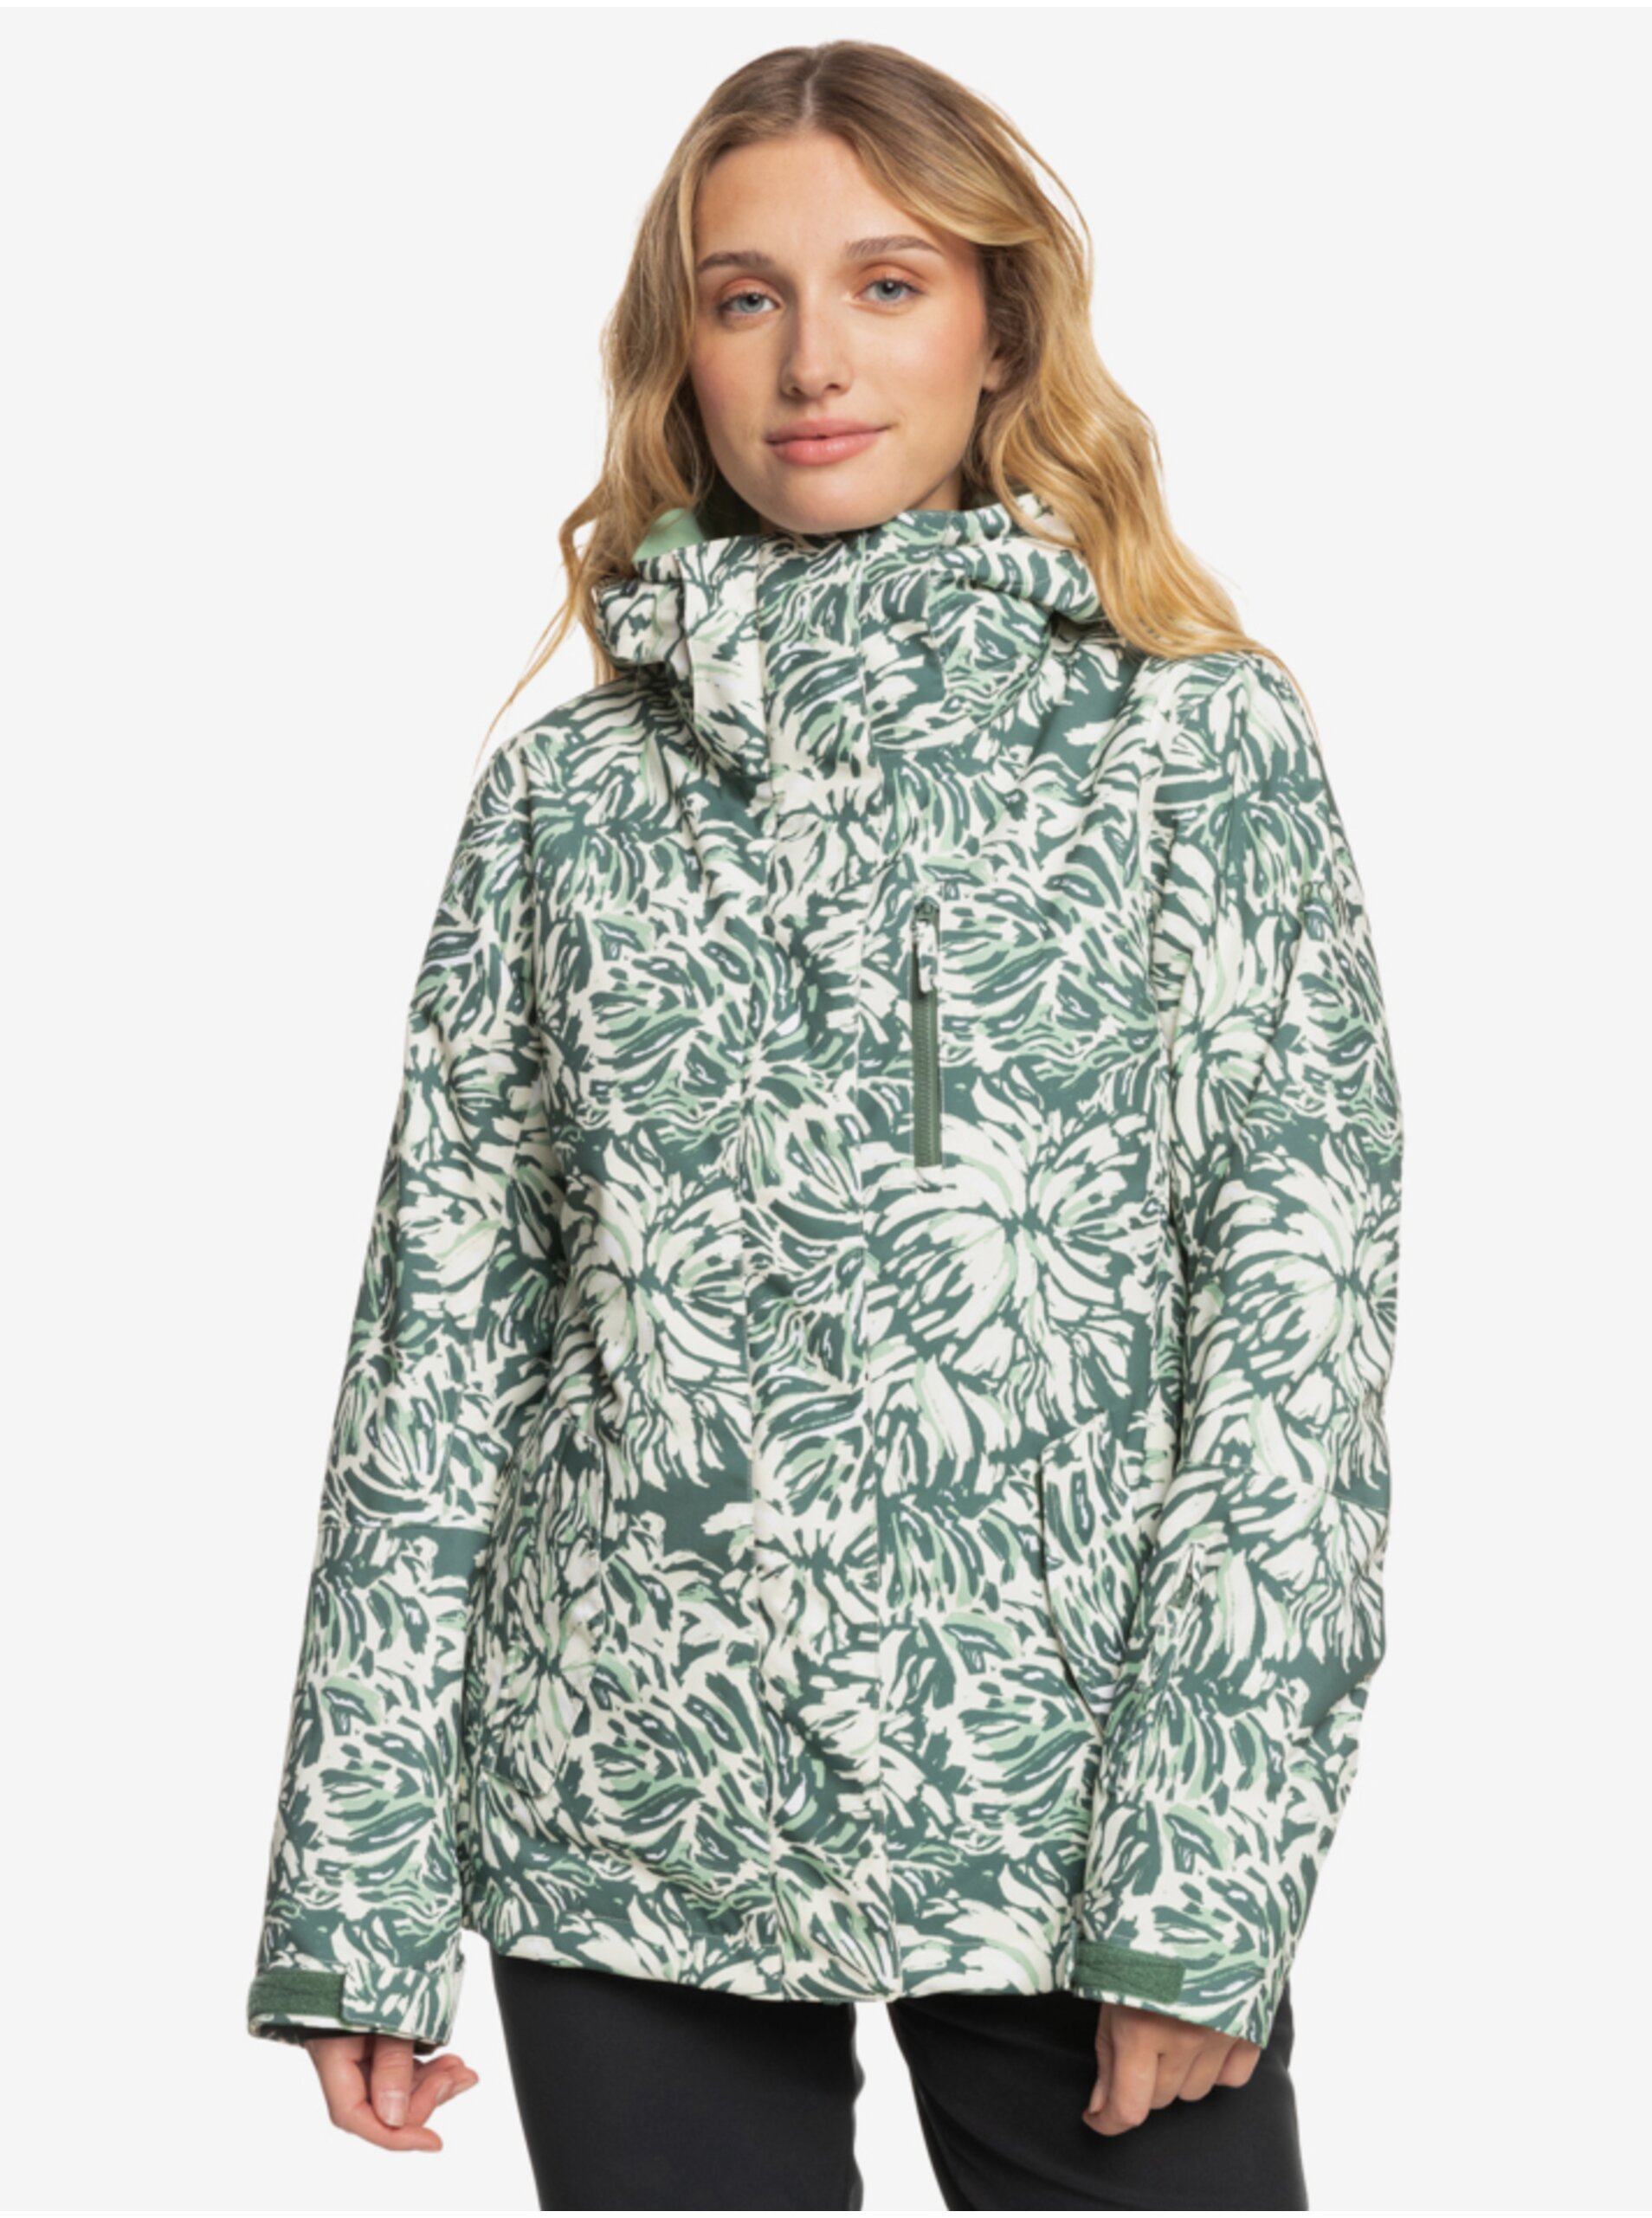 Lacno Zeleno-krémová dámska zimná vzorovaná bunda Roxy Jetty